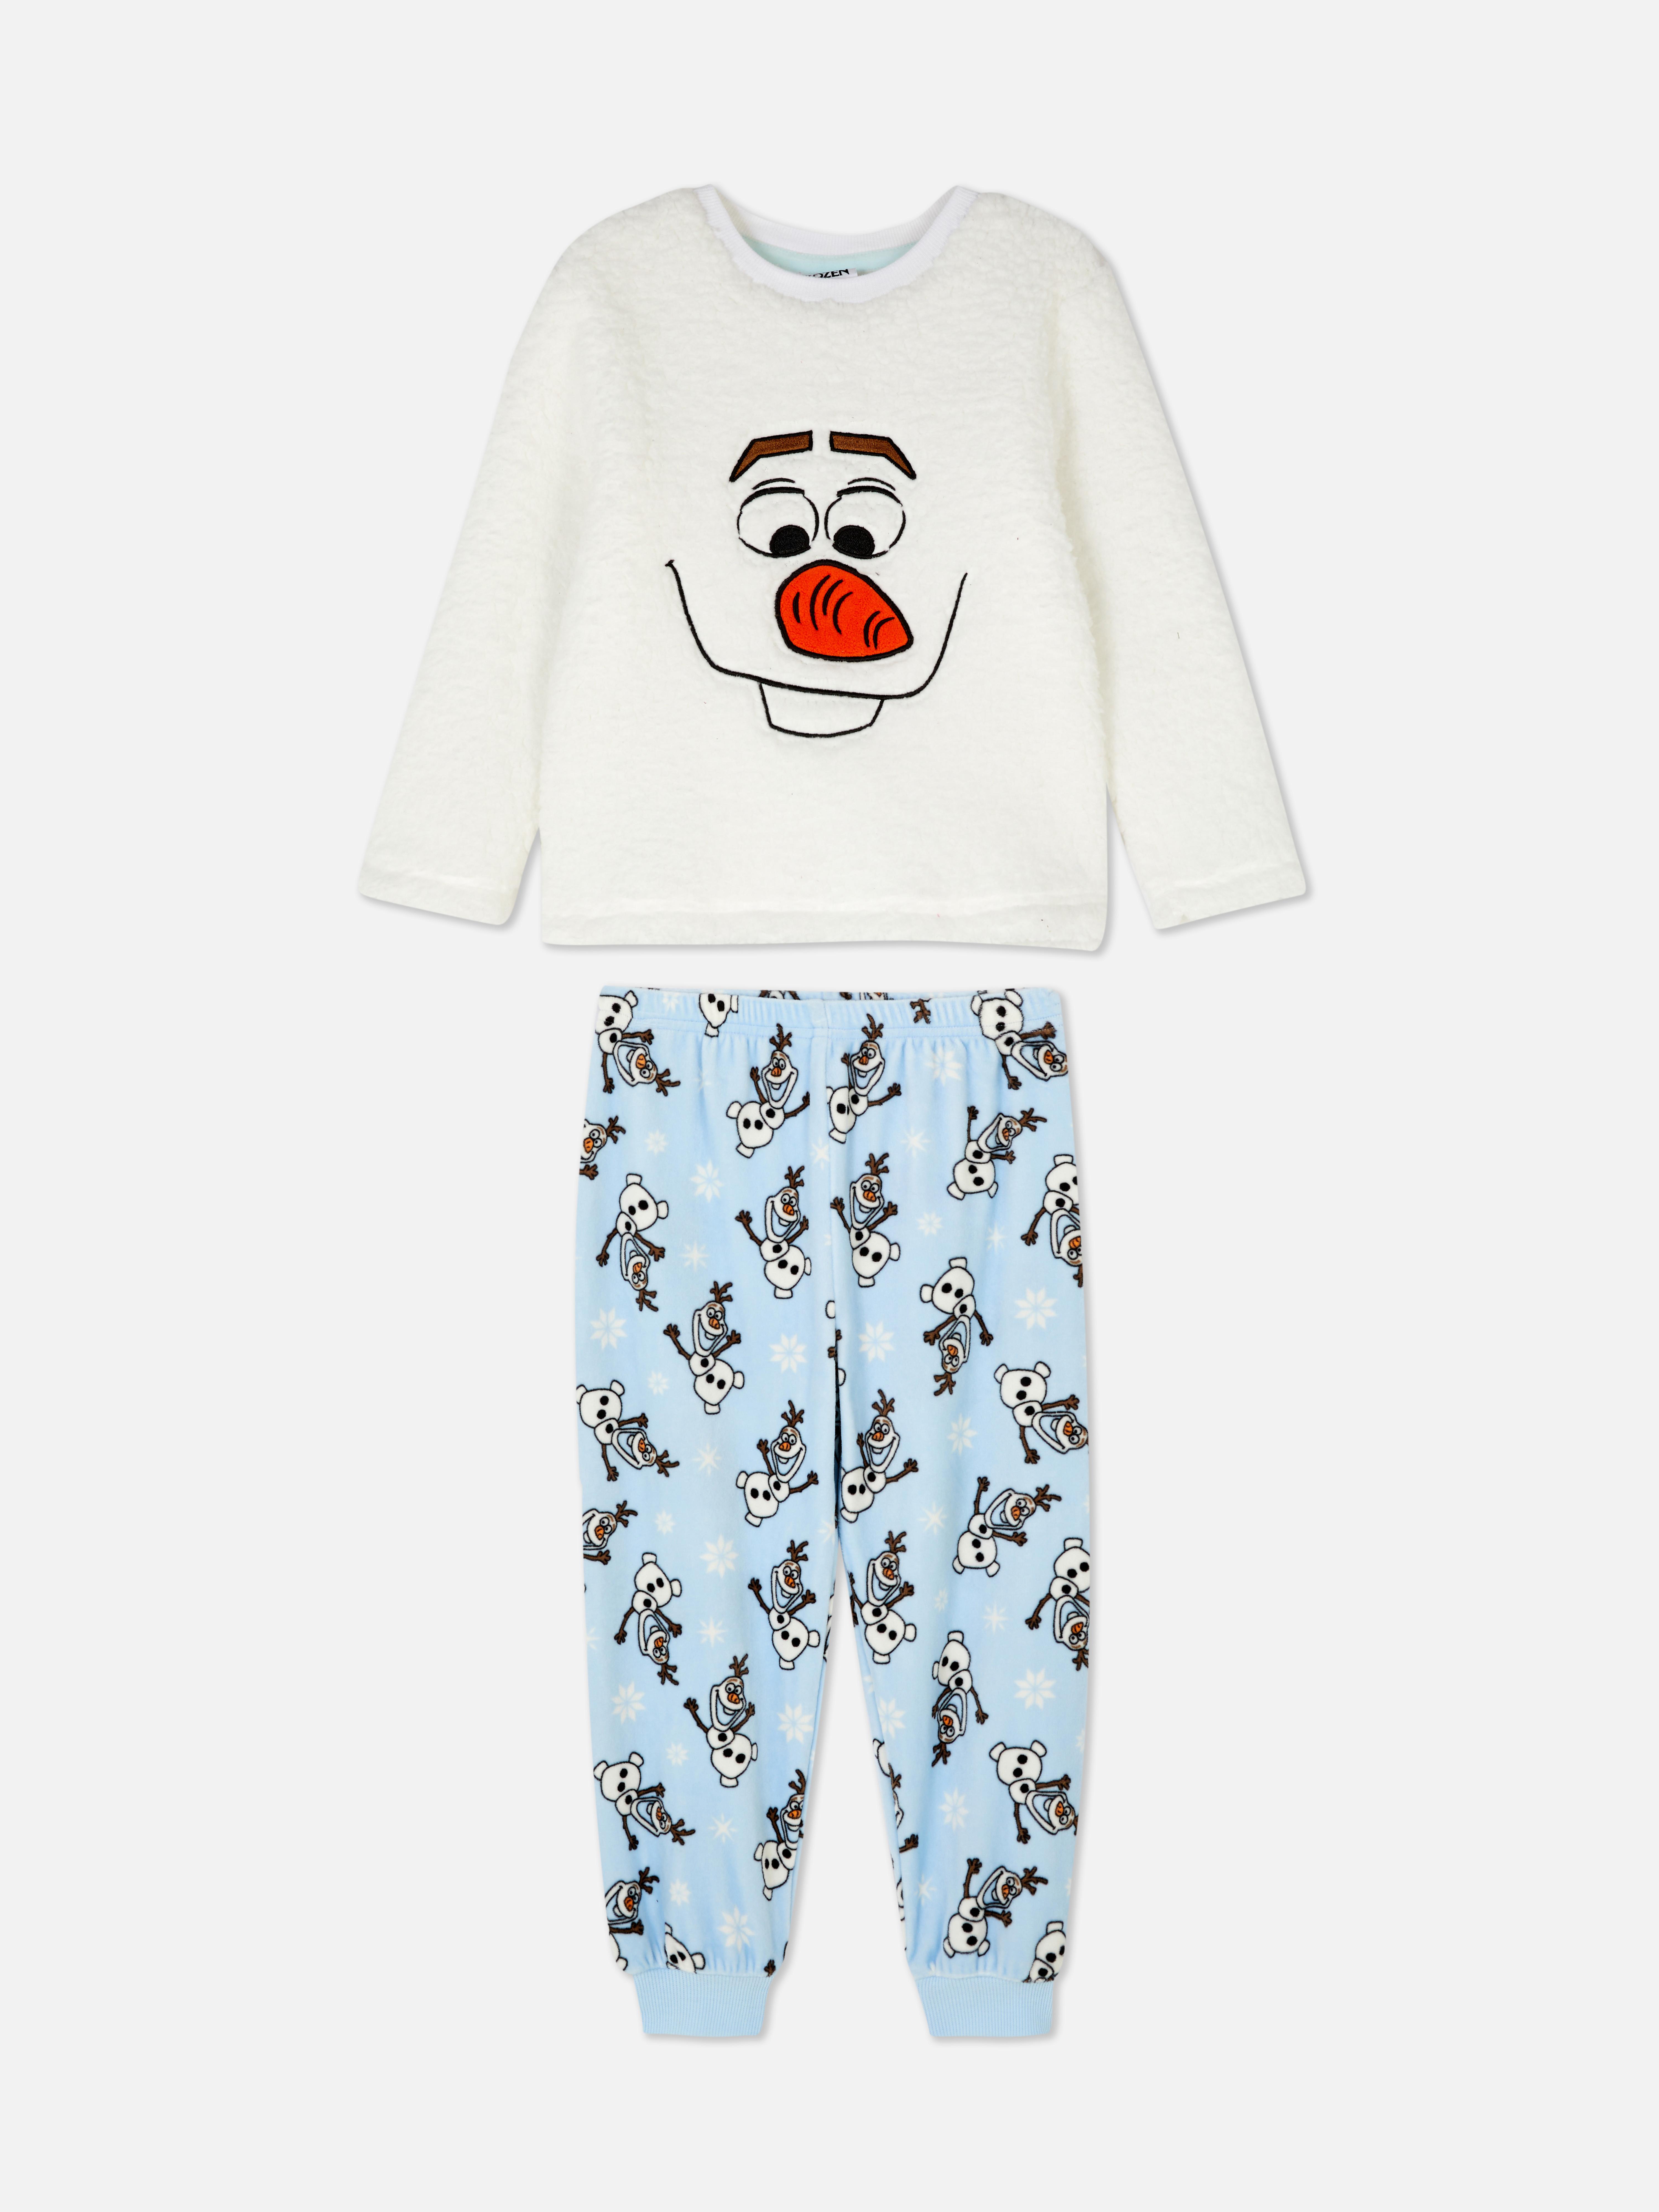 Disney's Frozen Olaf Fleece Pyjamas